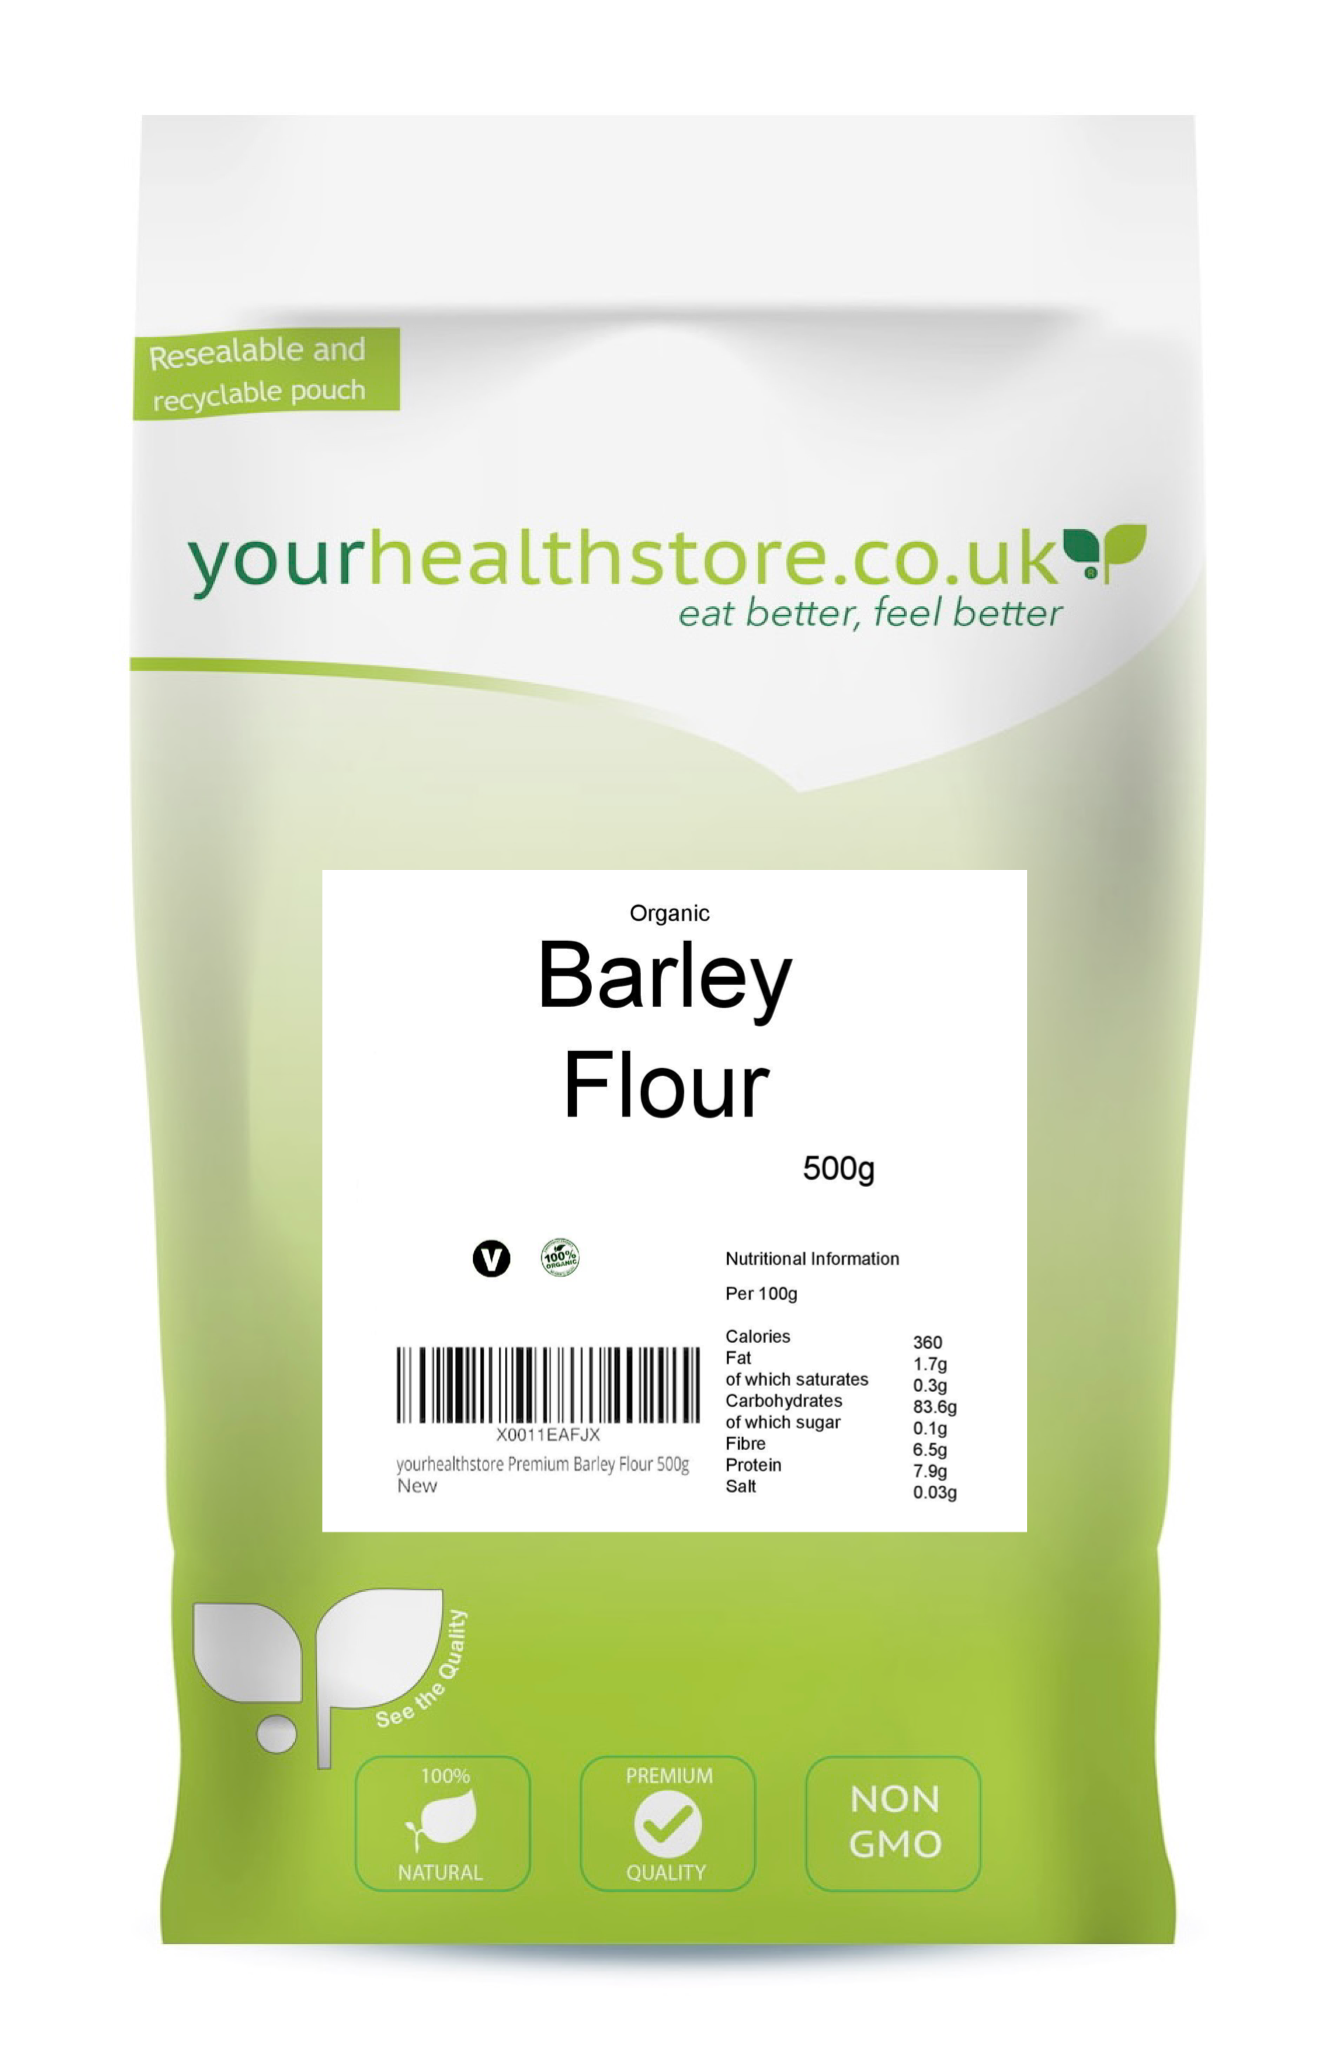 yourhealthstore Premium Barley Flour 500g